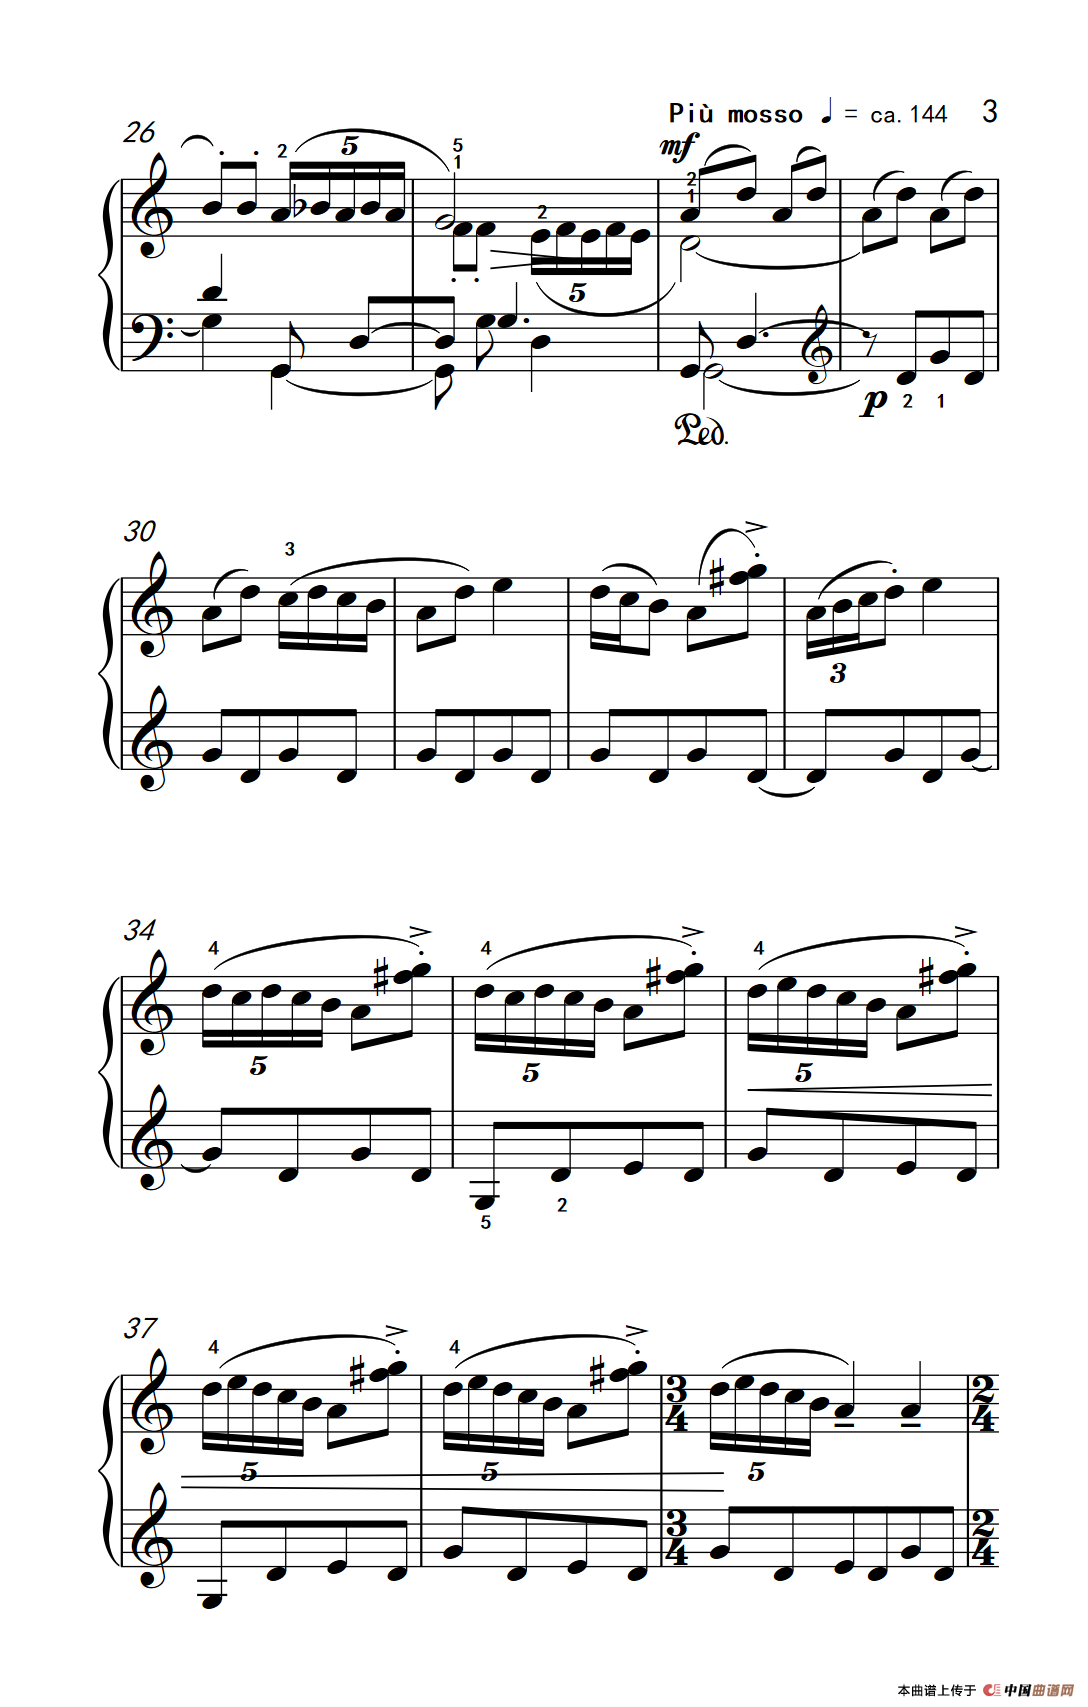 《风笛》钢琴曲谱图分享